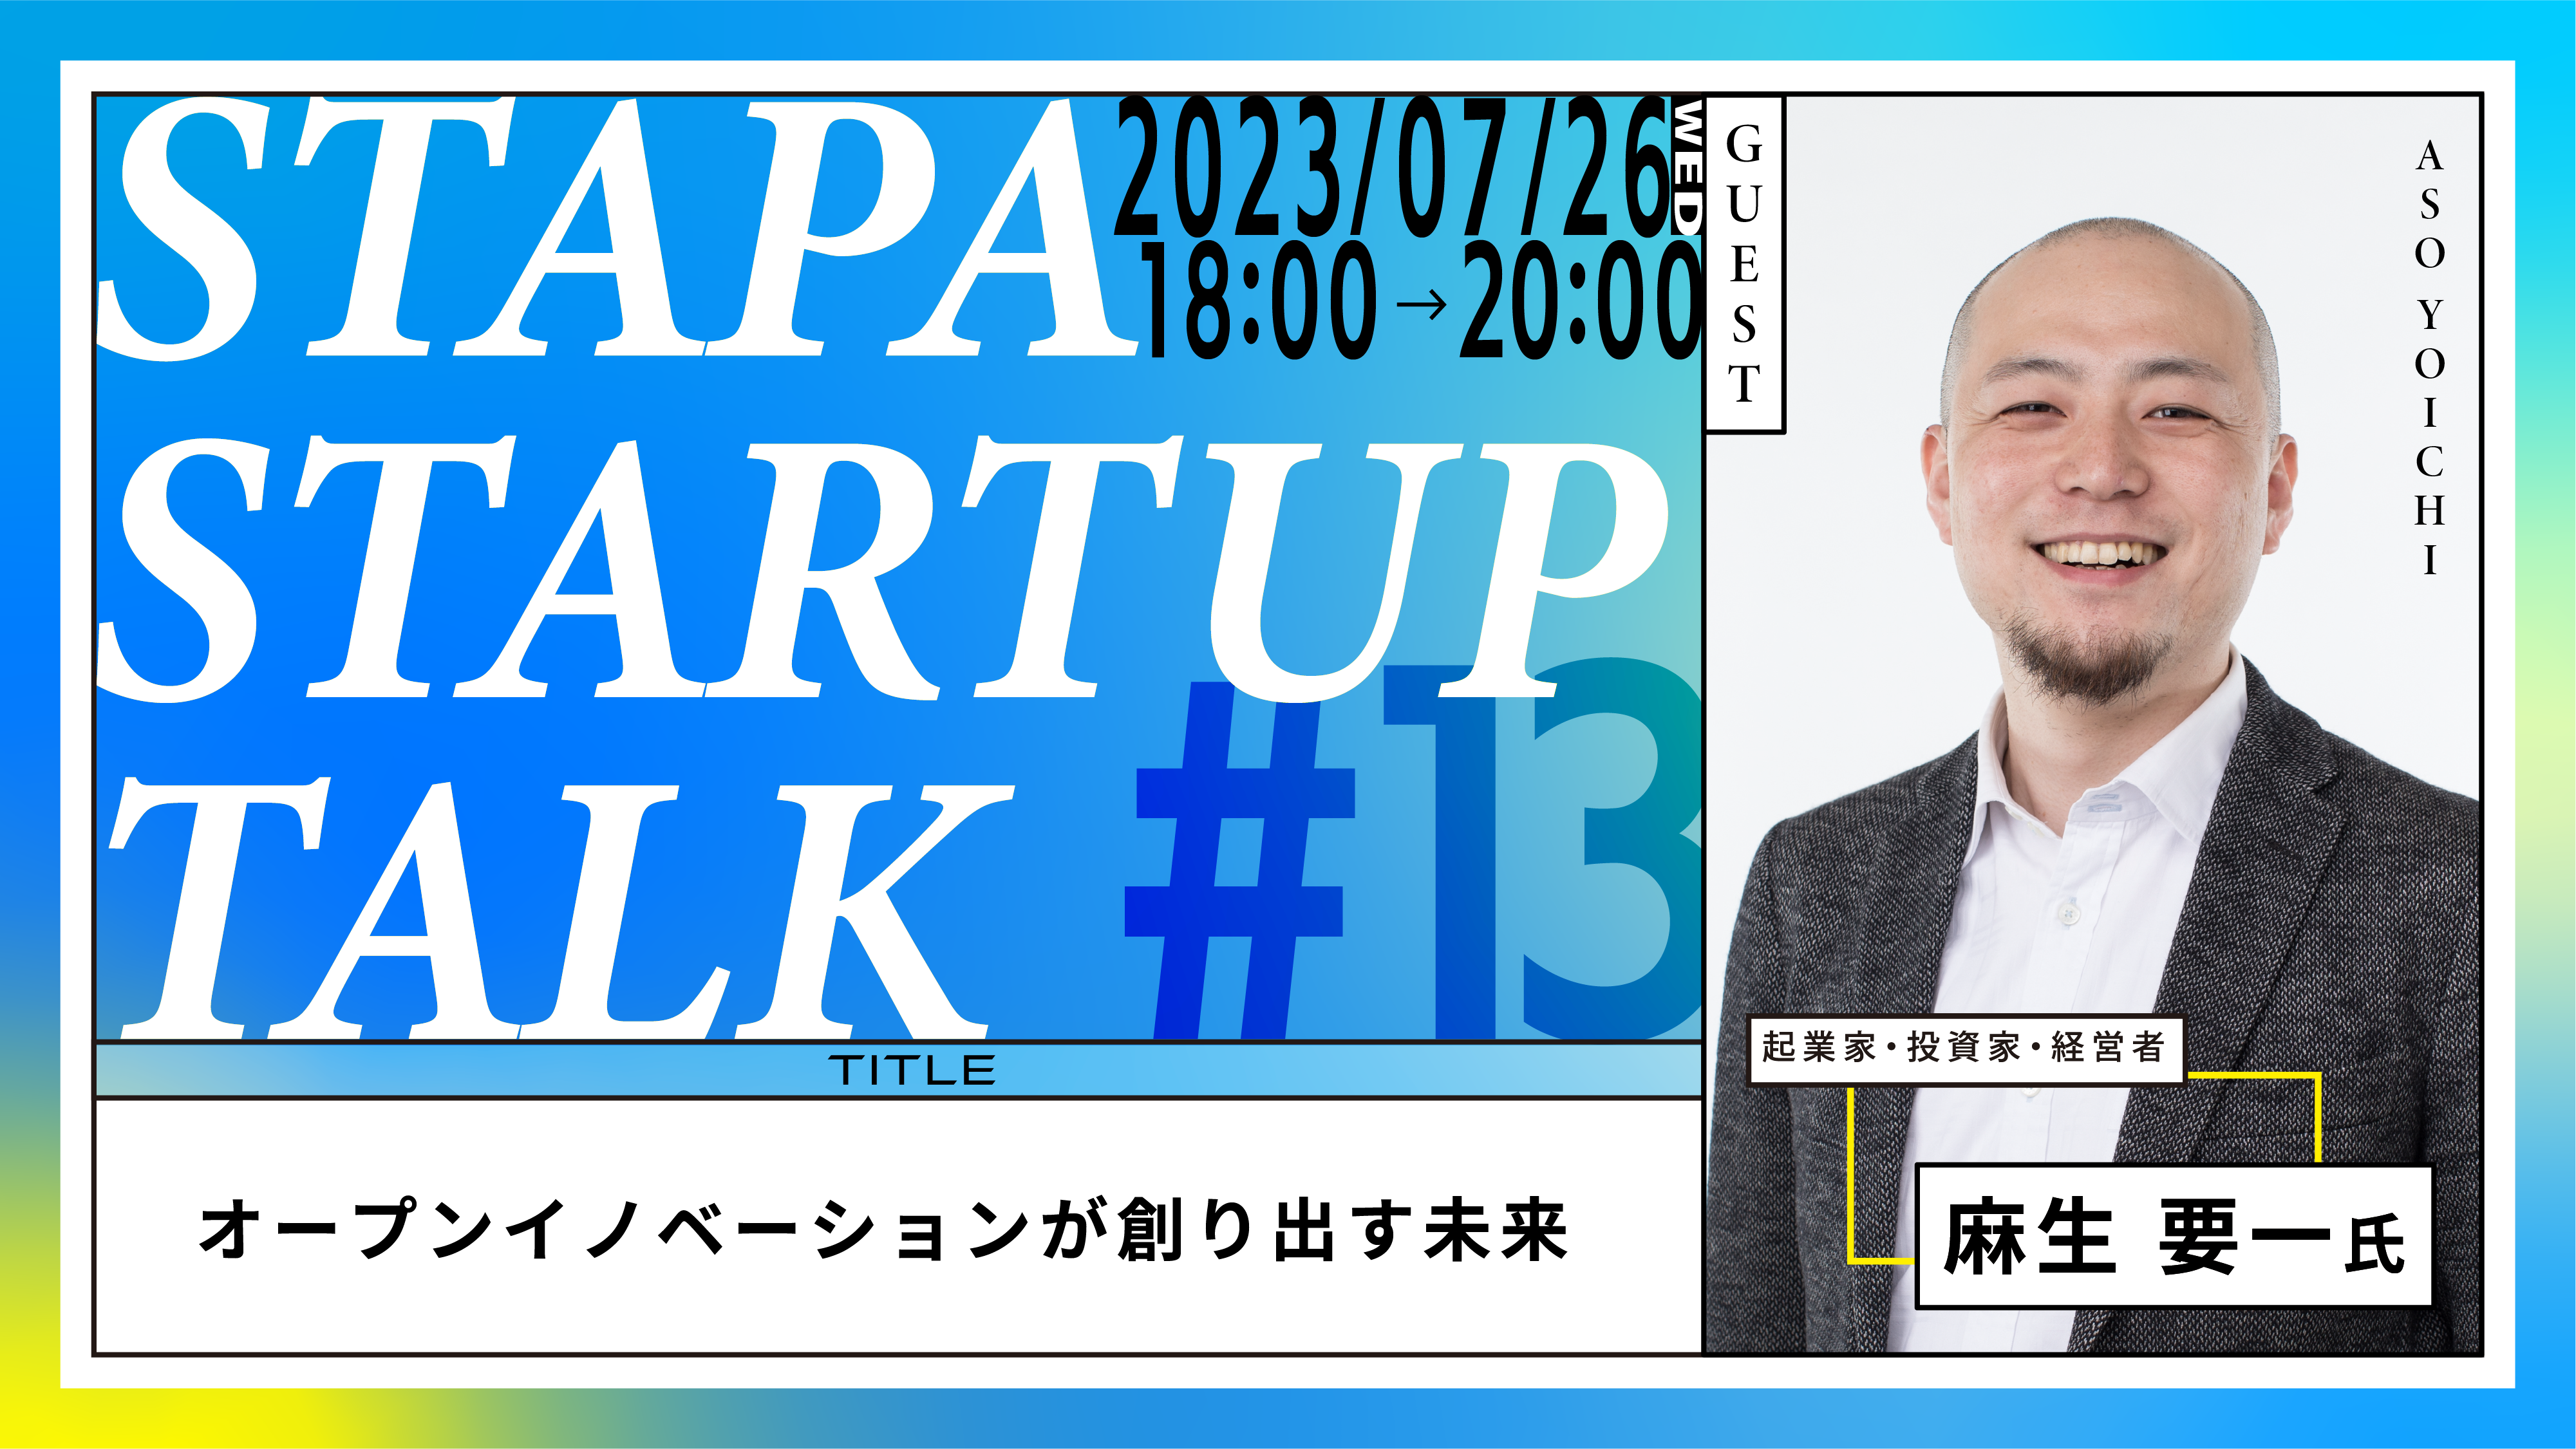 STAPA STARTUP TALK #13 －オープンイノベーションが創り出す未来－